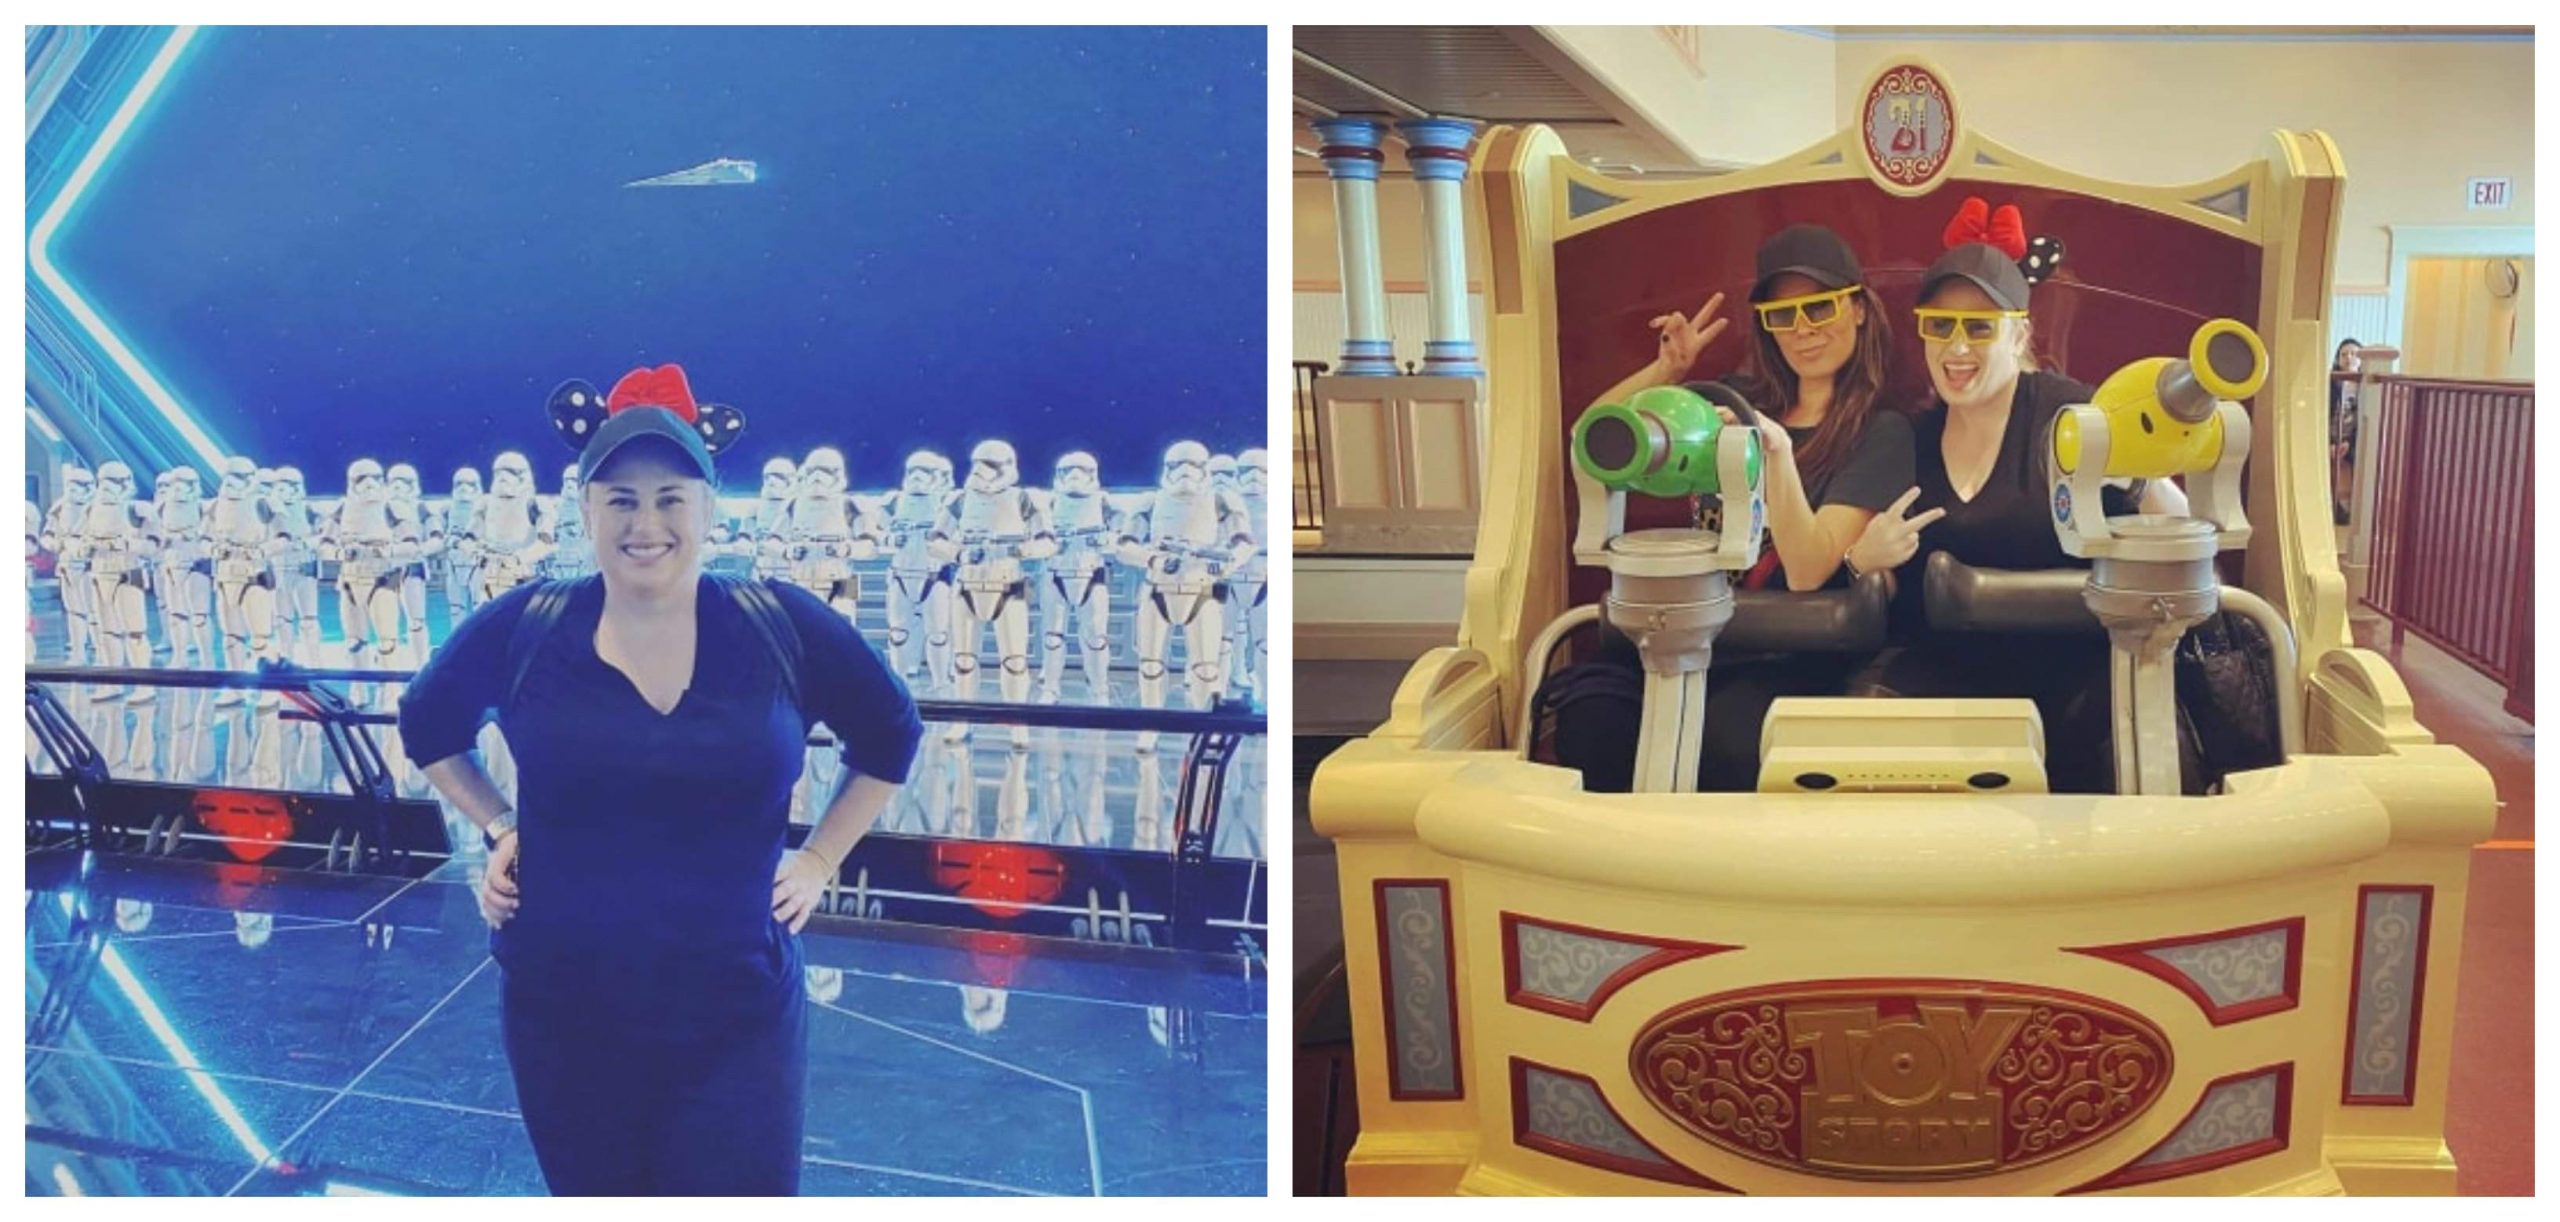 Actress Rebel Wilson Visits Disneyland